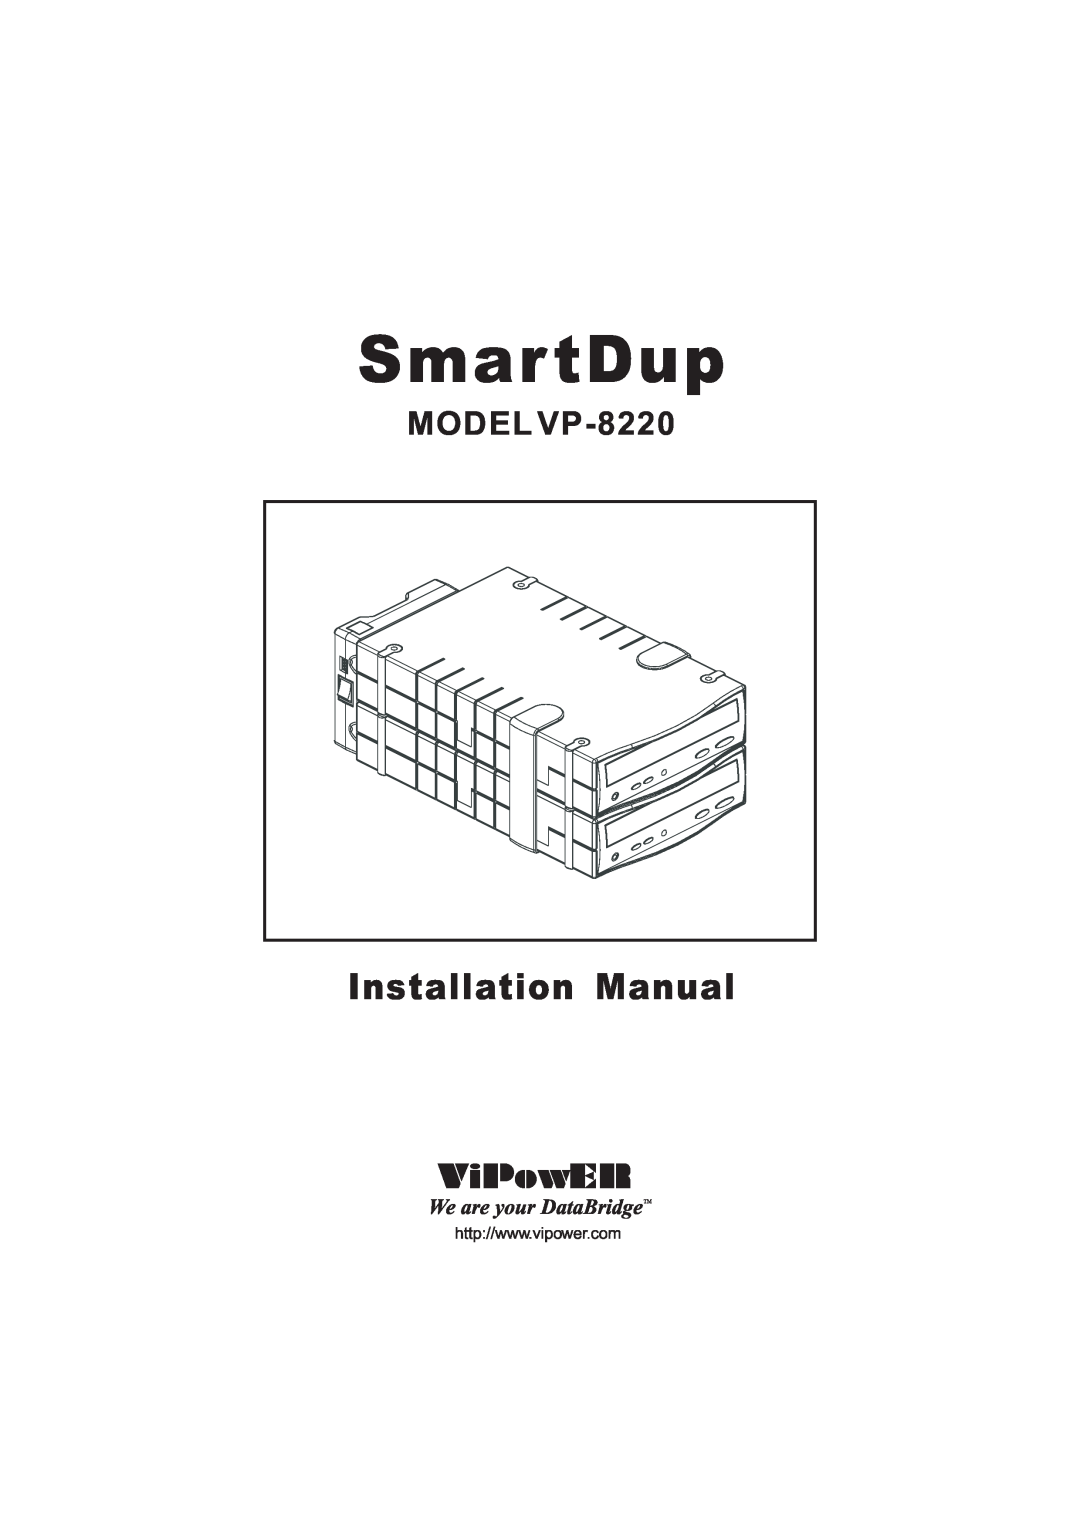 VIPowER installation manual Smar tDup, Installation Manual, MODEL VP-8220 